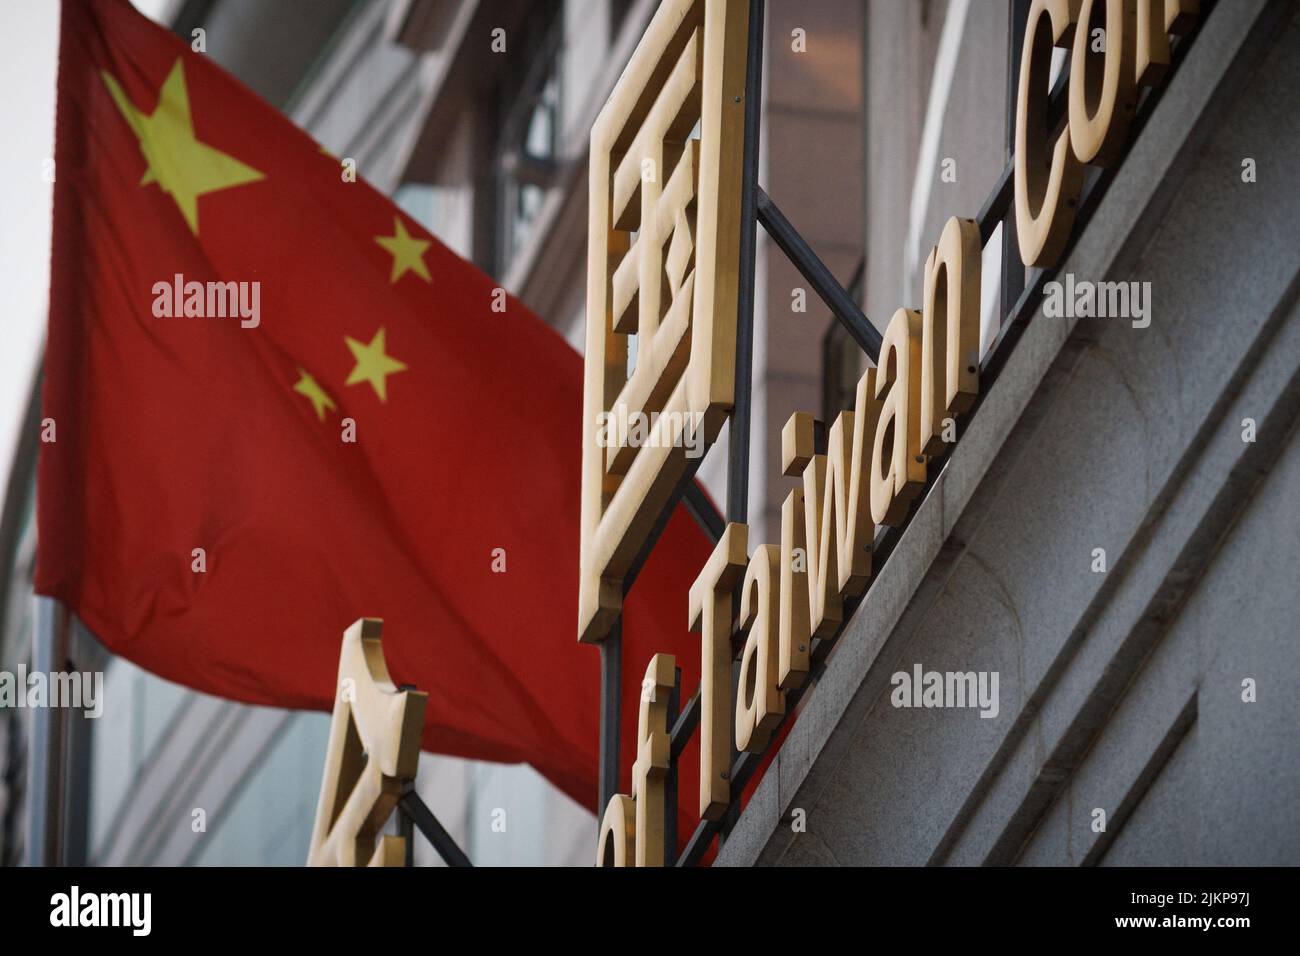 La bandiera nazionale cinese vola fuori dalla costruzione della Federazione All China dei compatrioti di Taiwan a Pechino, Cina, 3 agosto 2022. REUTERS/Thomas Peter Foto Stock